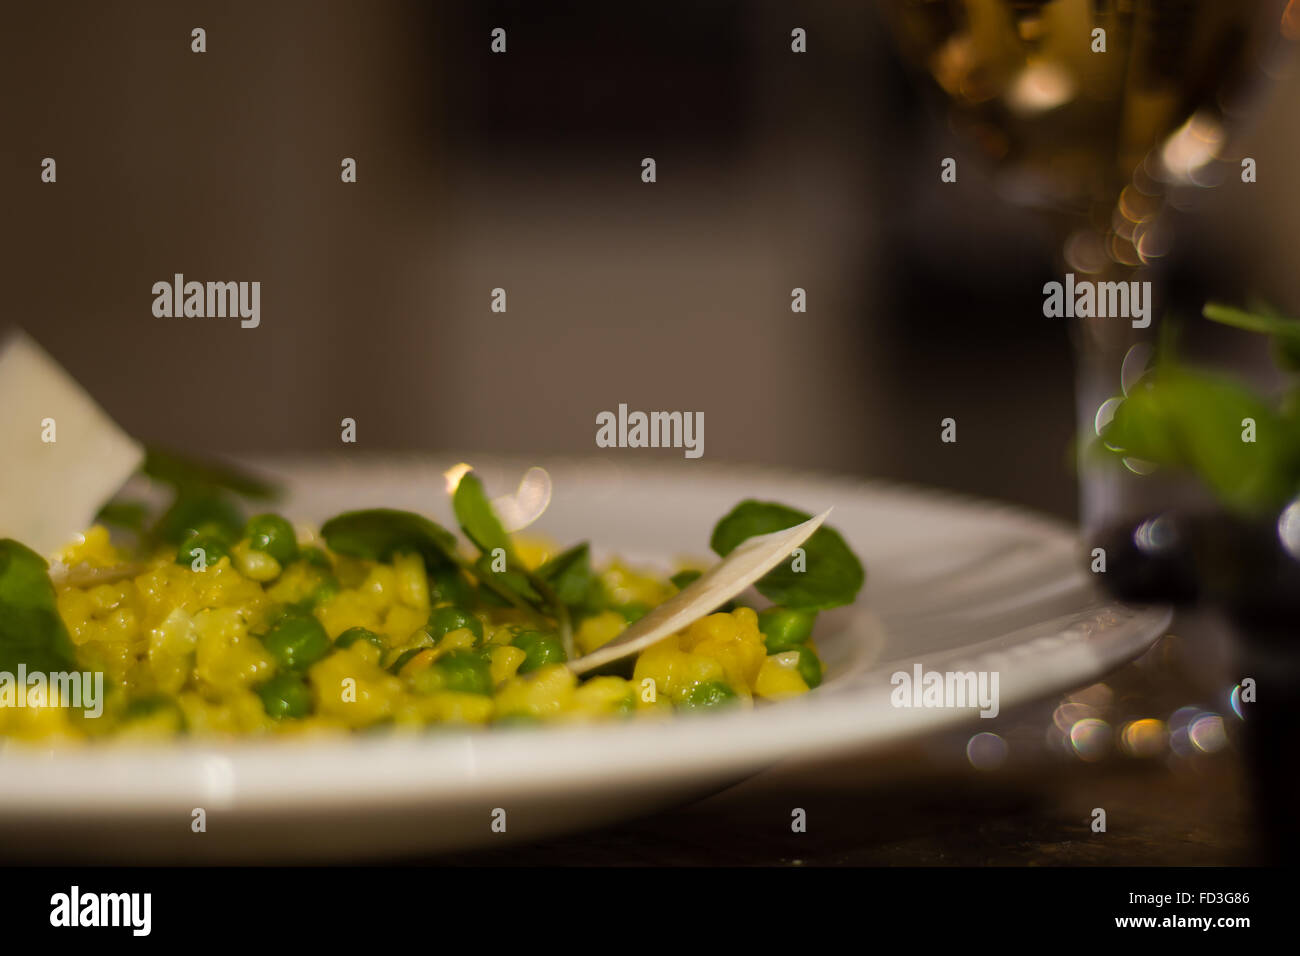 Lauch, Garten Erbsen und Safranrisotto halbe Platte mit Wein. Französisches Restaurant, die Küche mit hellen gelben Reis Stockfoto